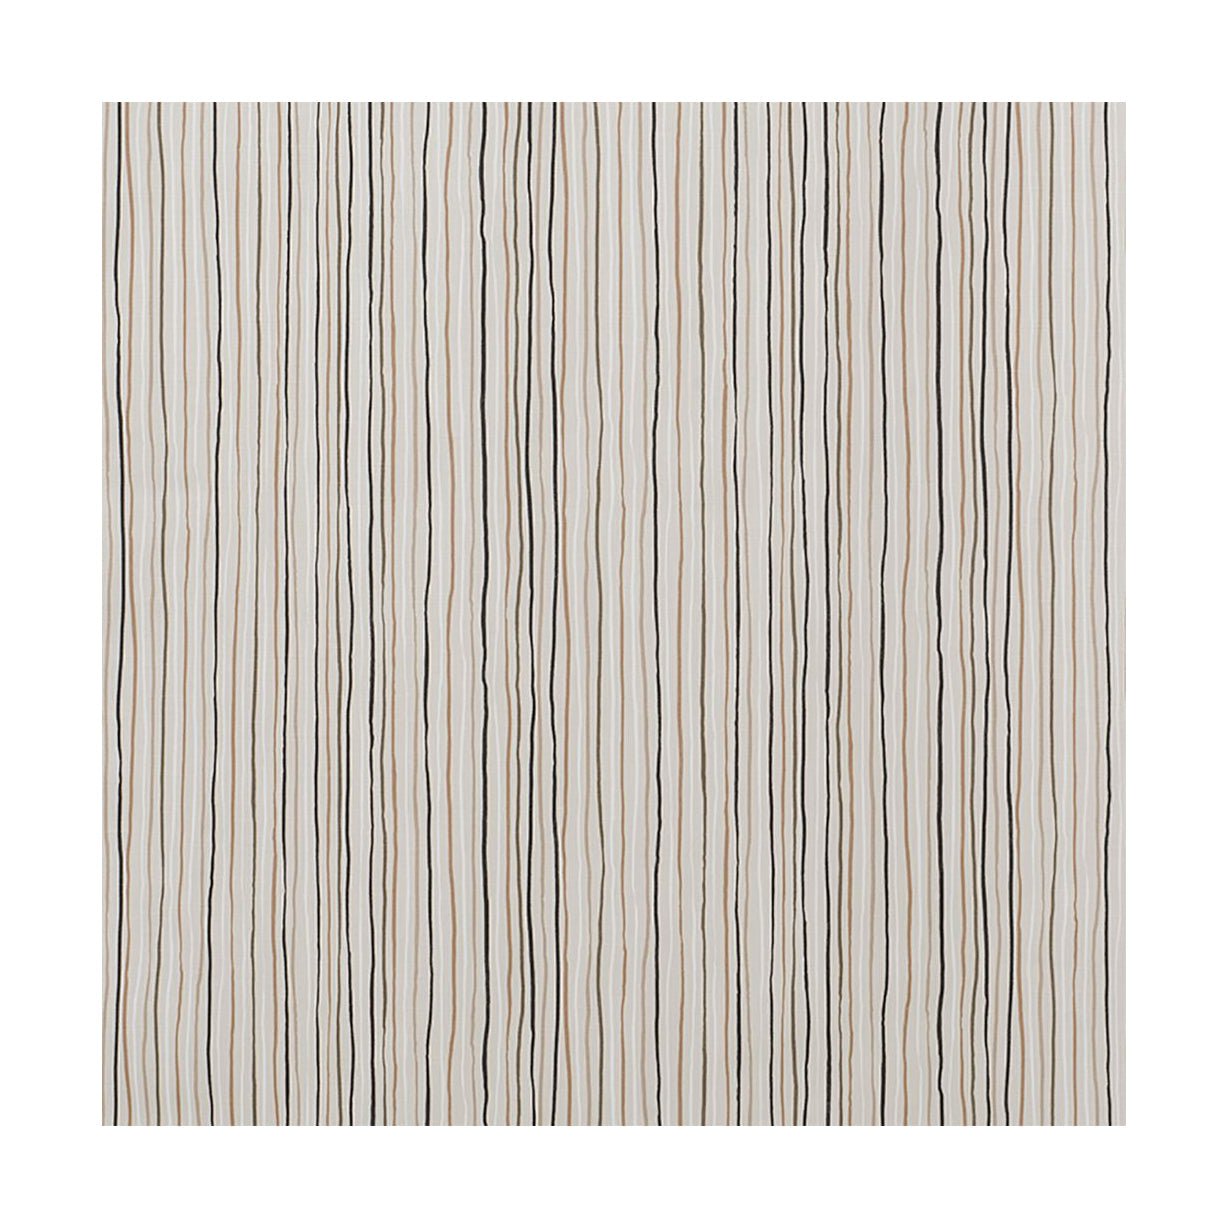 Szerokość tkaniny Spira Stripe 150 cm (cena za metr), Multi Natural